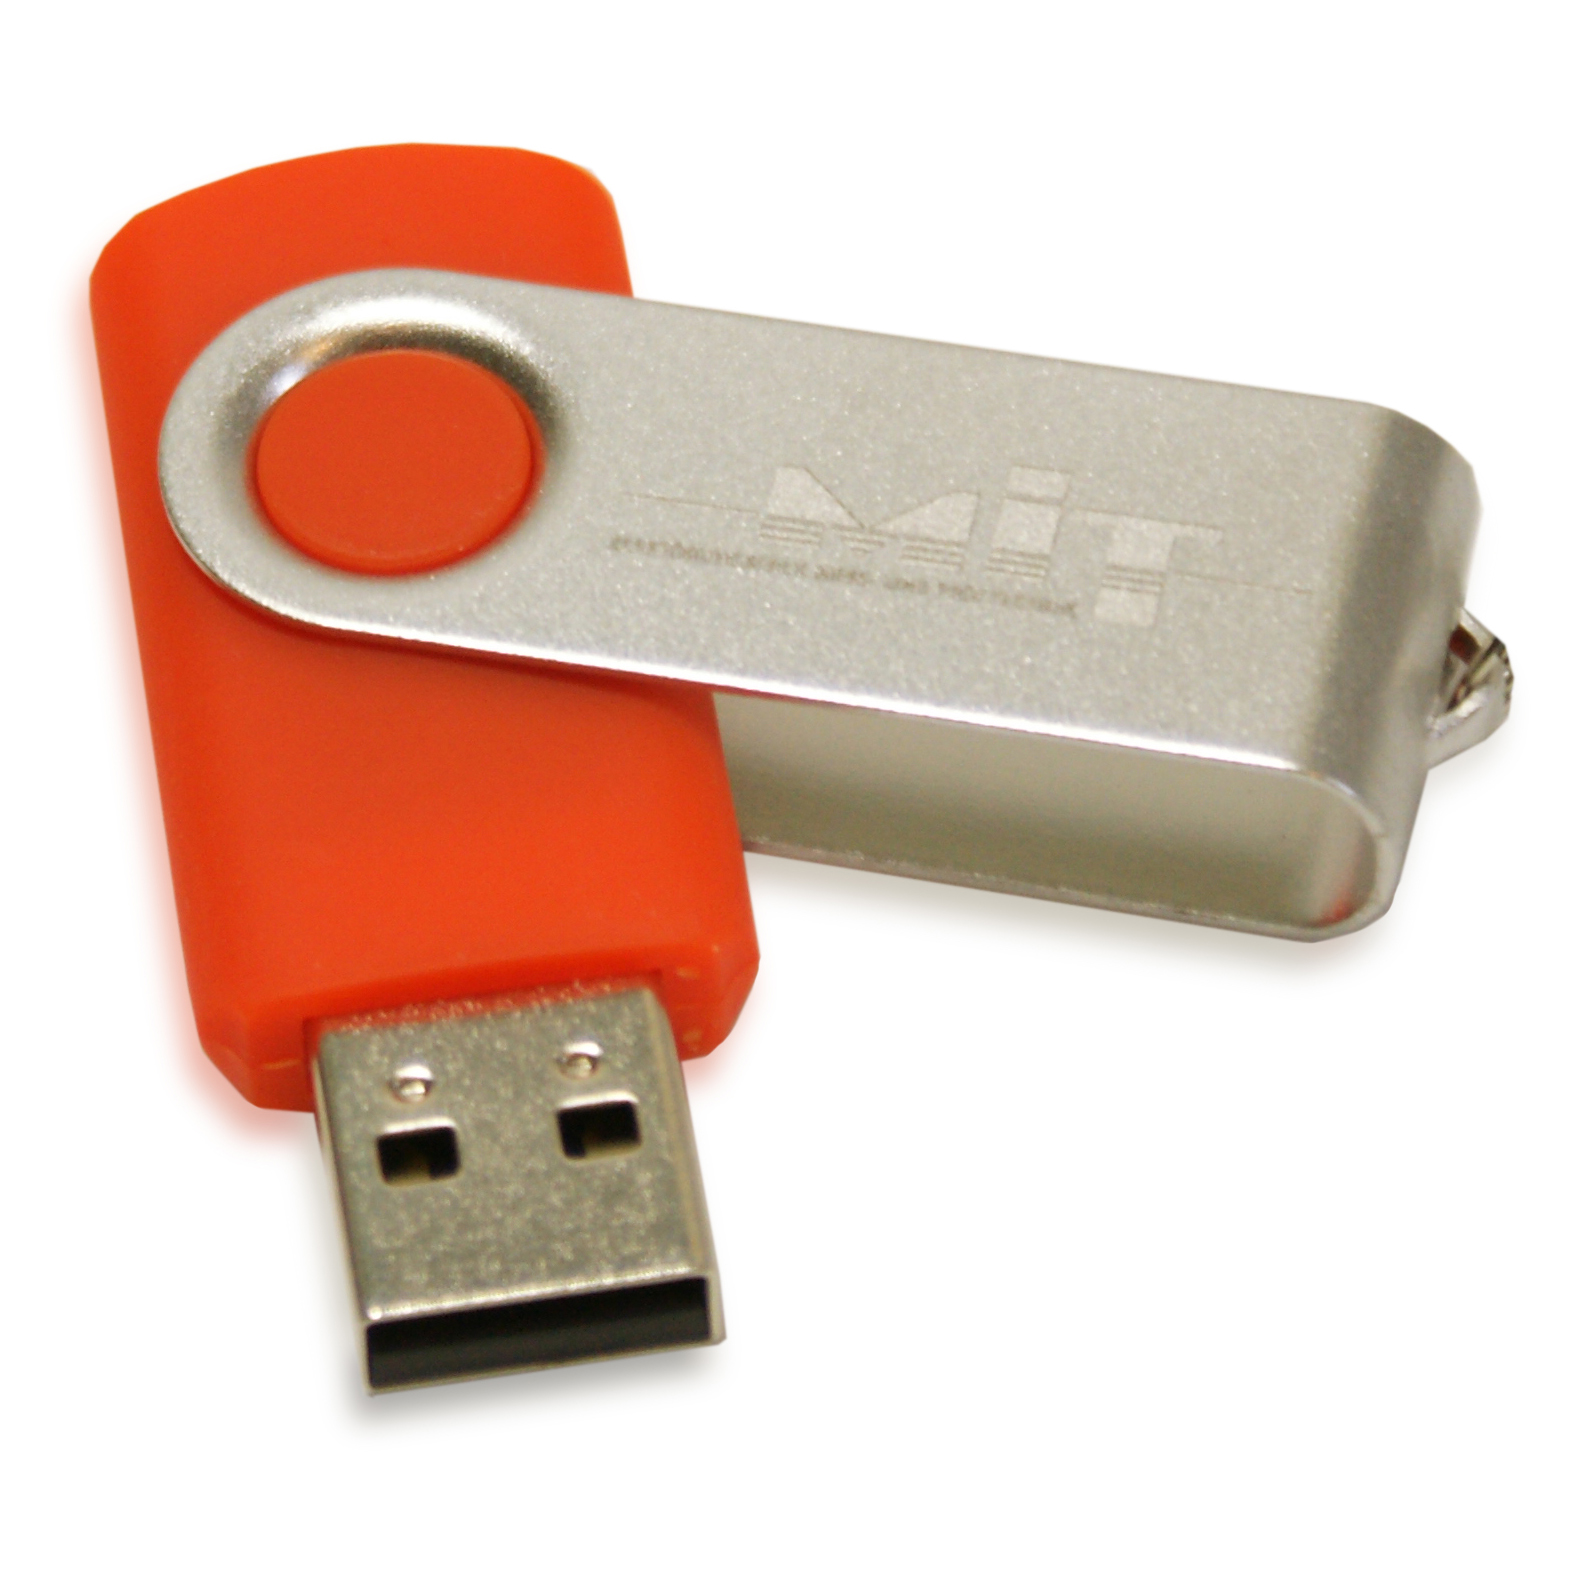 MIT 607Z103 USB flash drive for MIT-SCAN